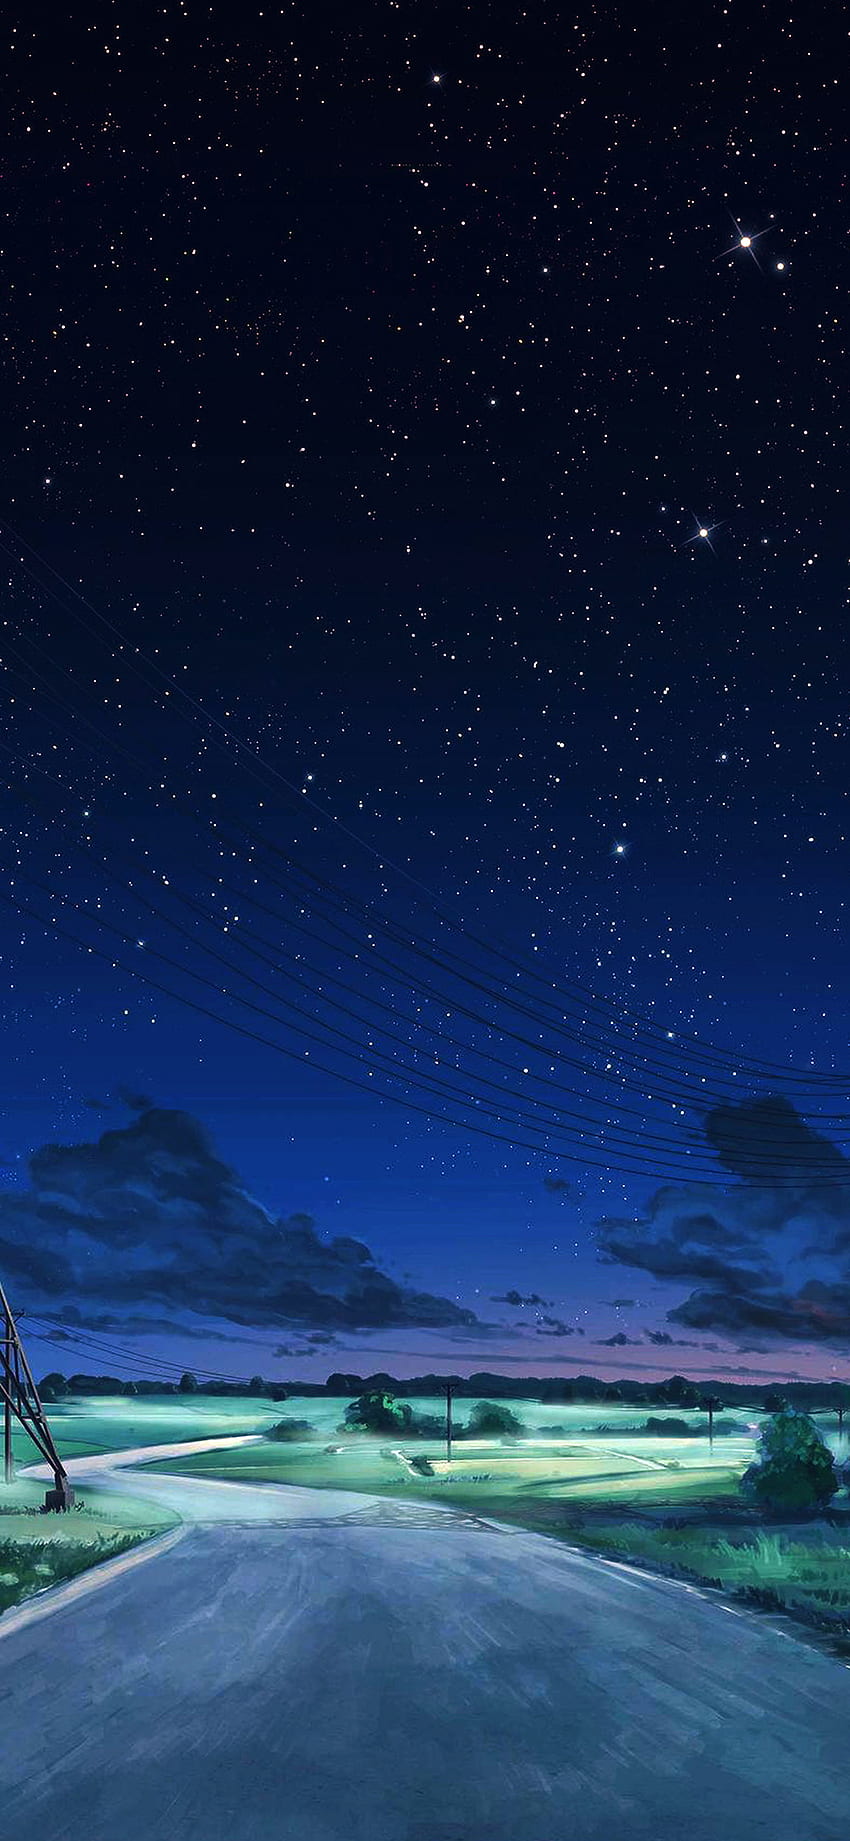 iPhone X. arseniy chebynkin nachthimmel stern blau illustrationskunst anime dunkel, blauer himmel und sterne HD-Handy-Hintergrundbild